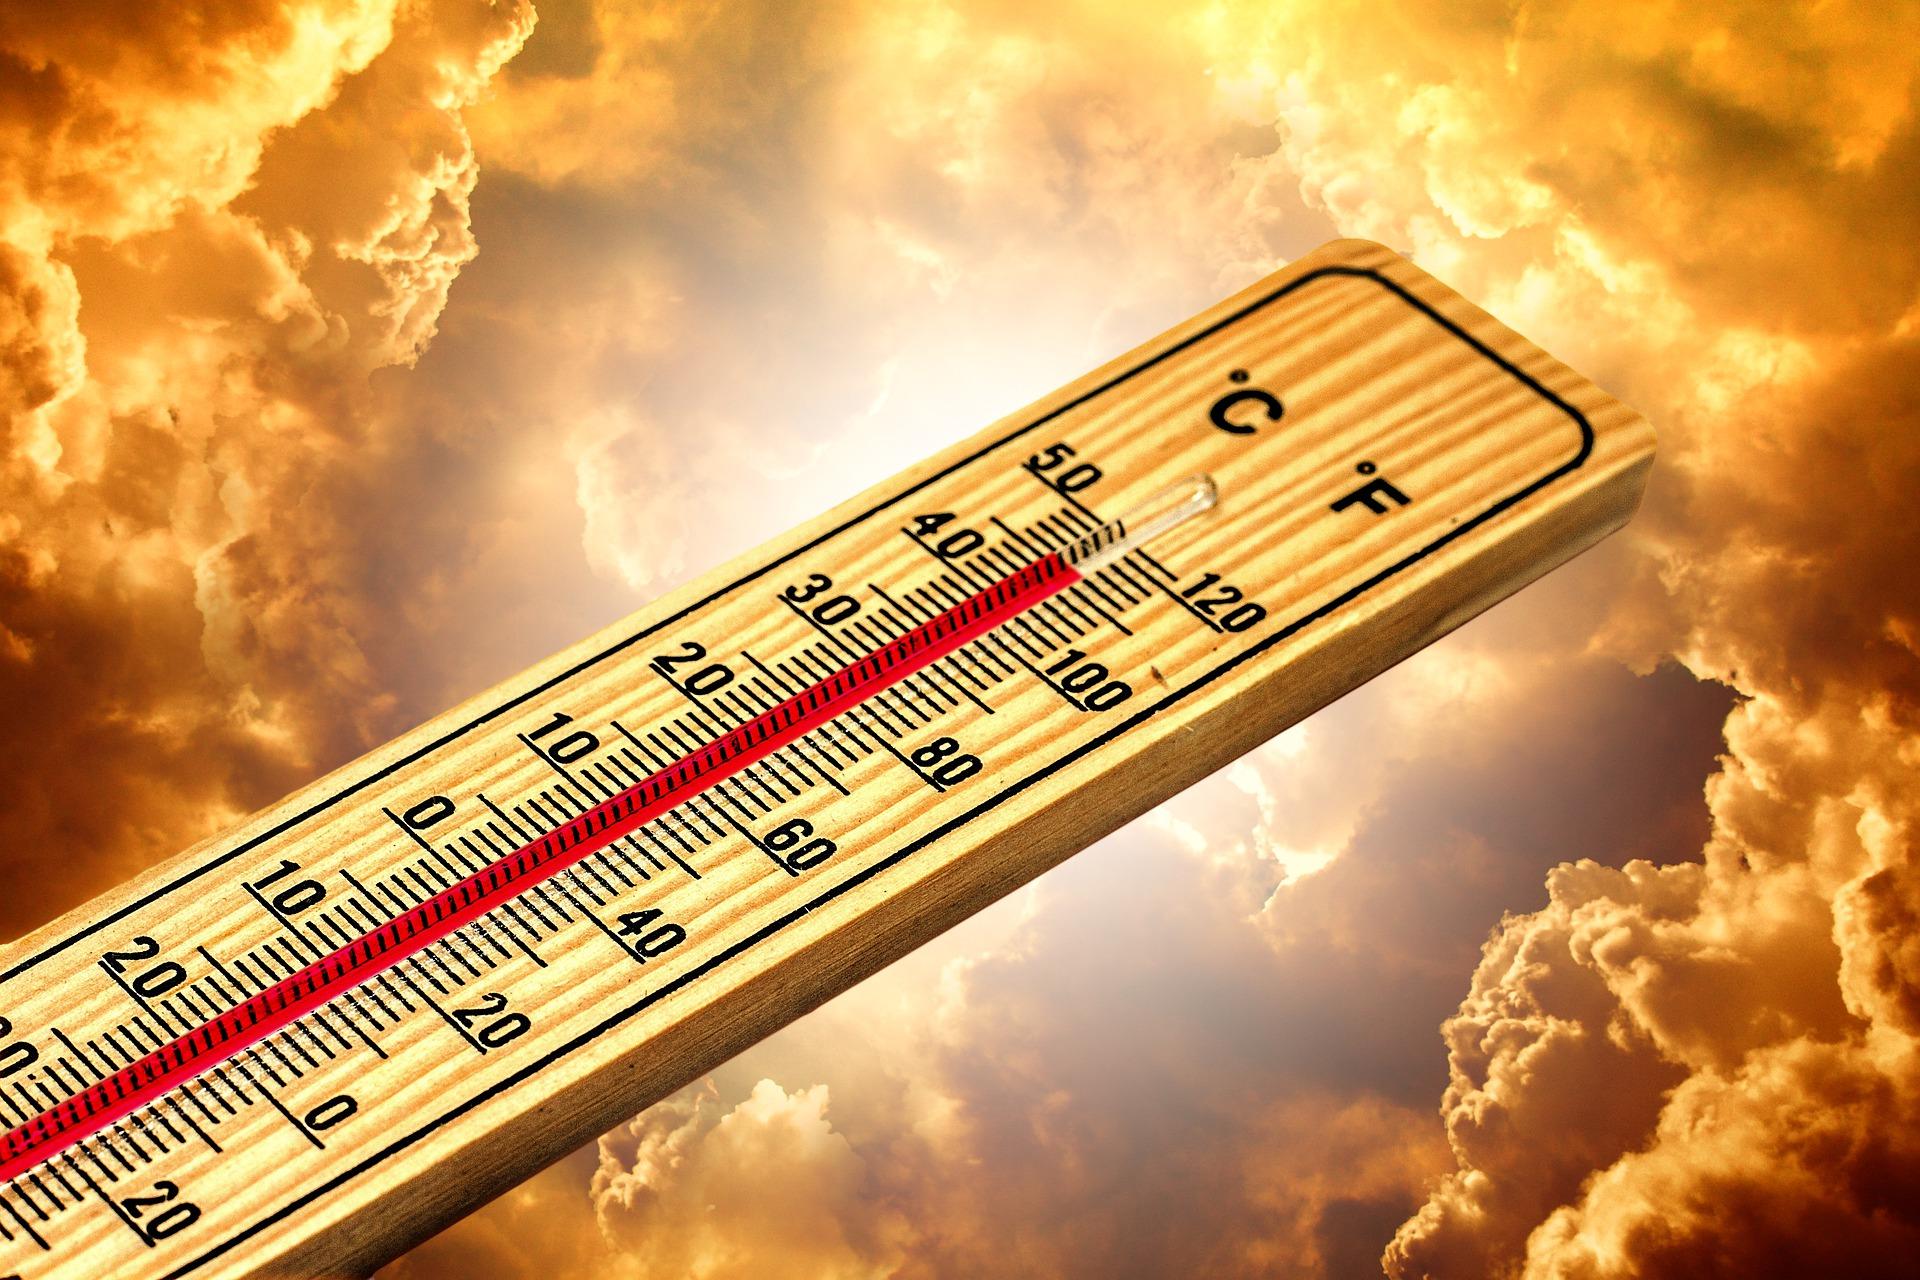 Météo : fortes chaleurs ce week-end en Occitanie, près de 35°C attendus !